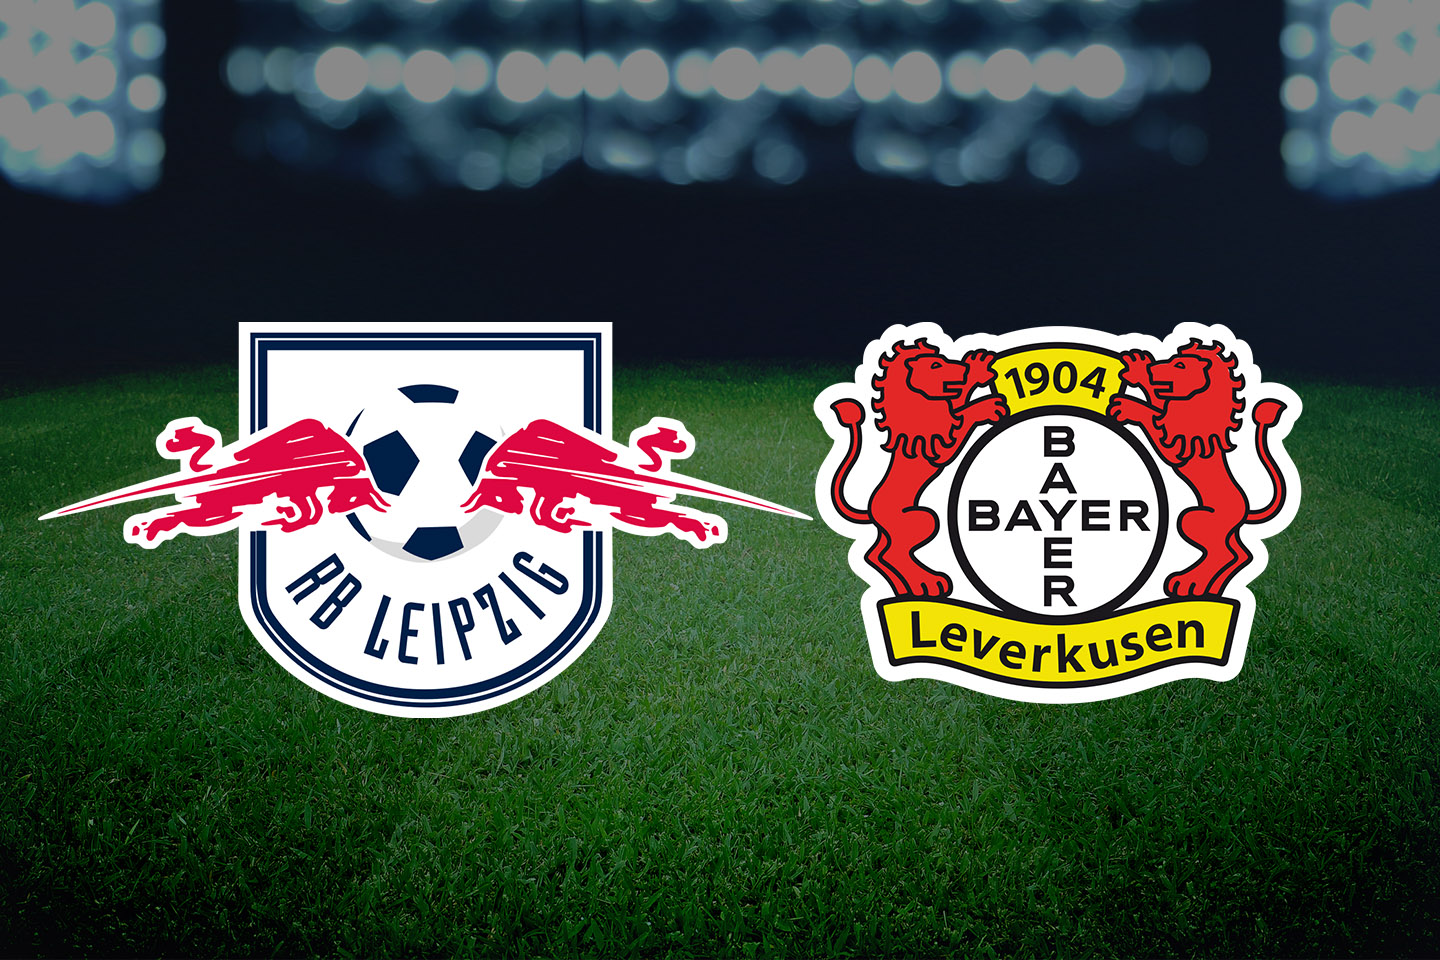 RB Leipzig – Bayer Leverkusen